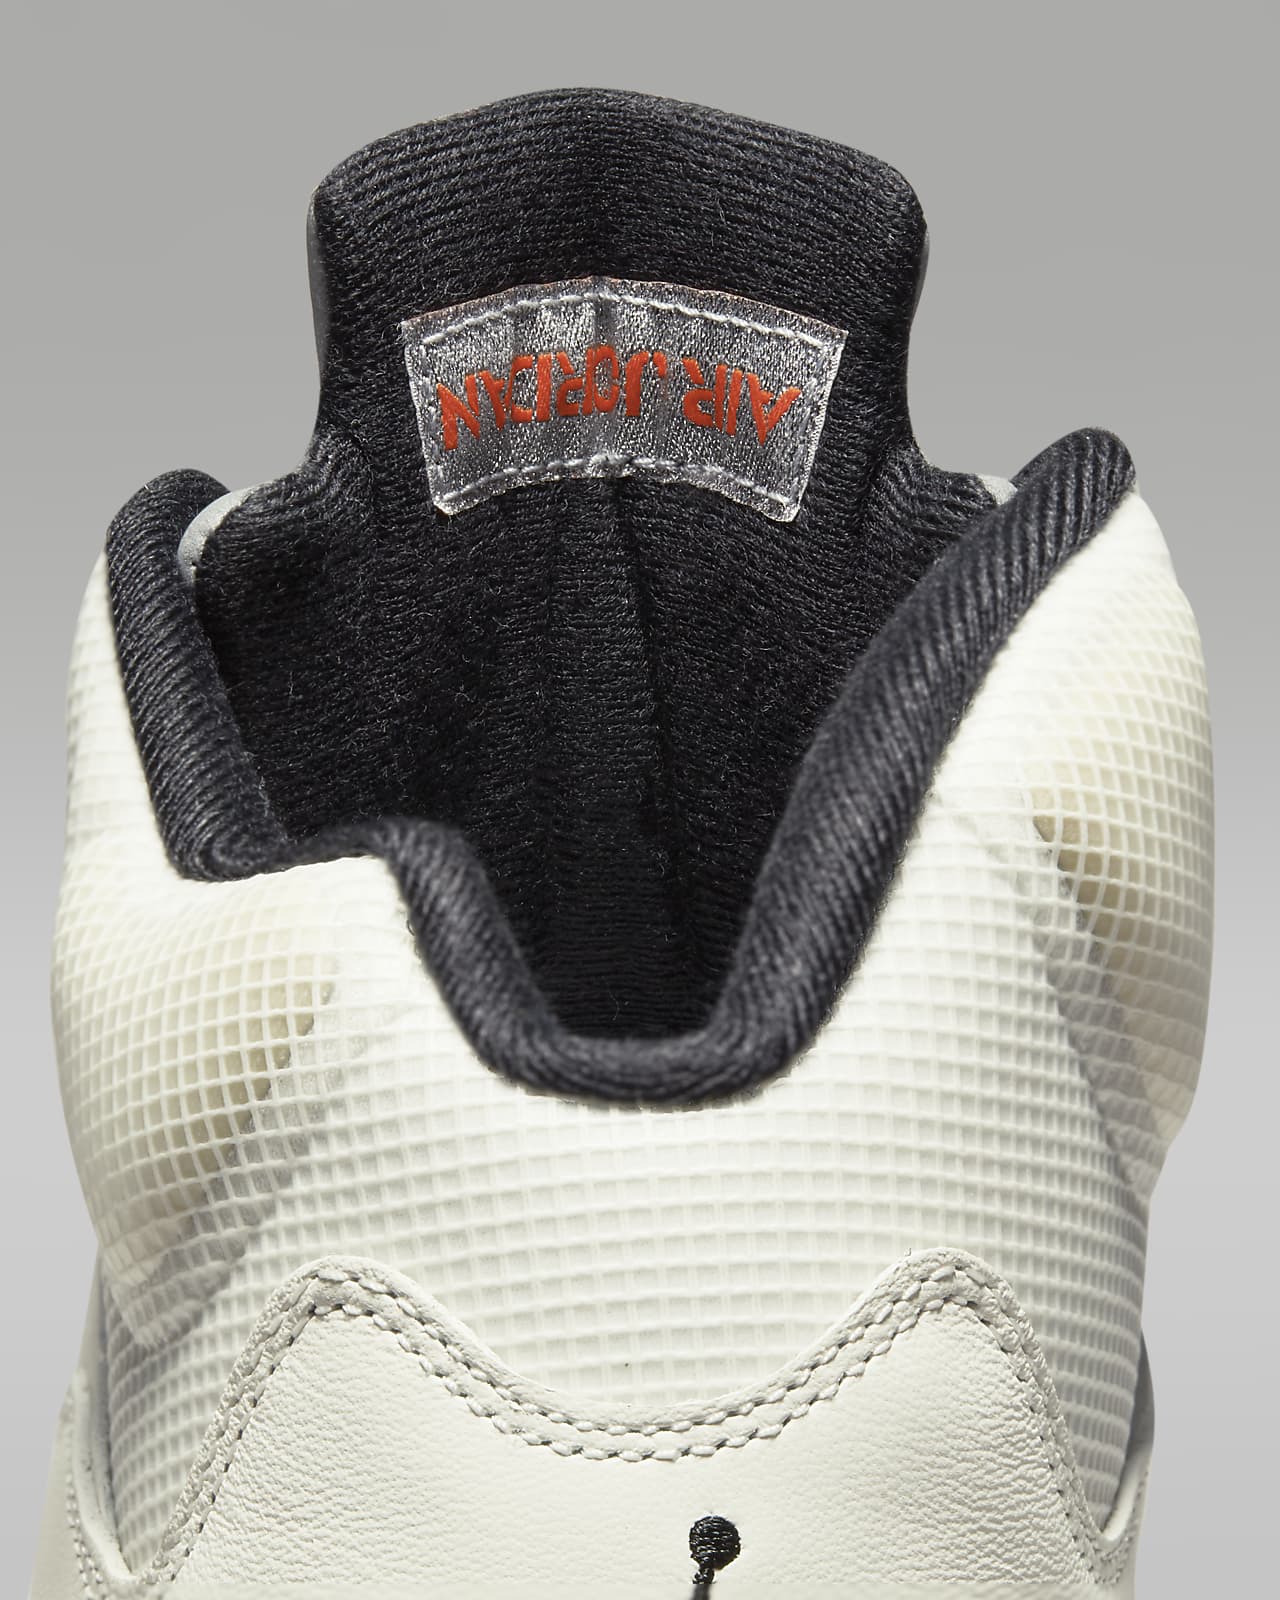 Nike Air Jordan 5 Retro Shoe